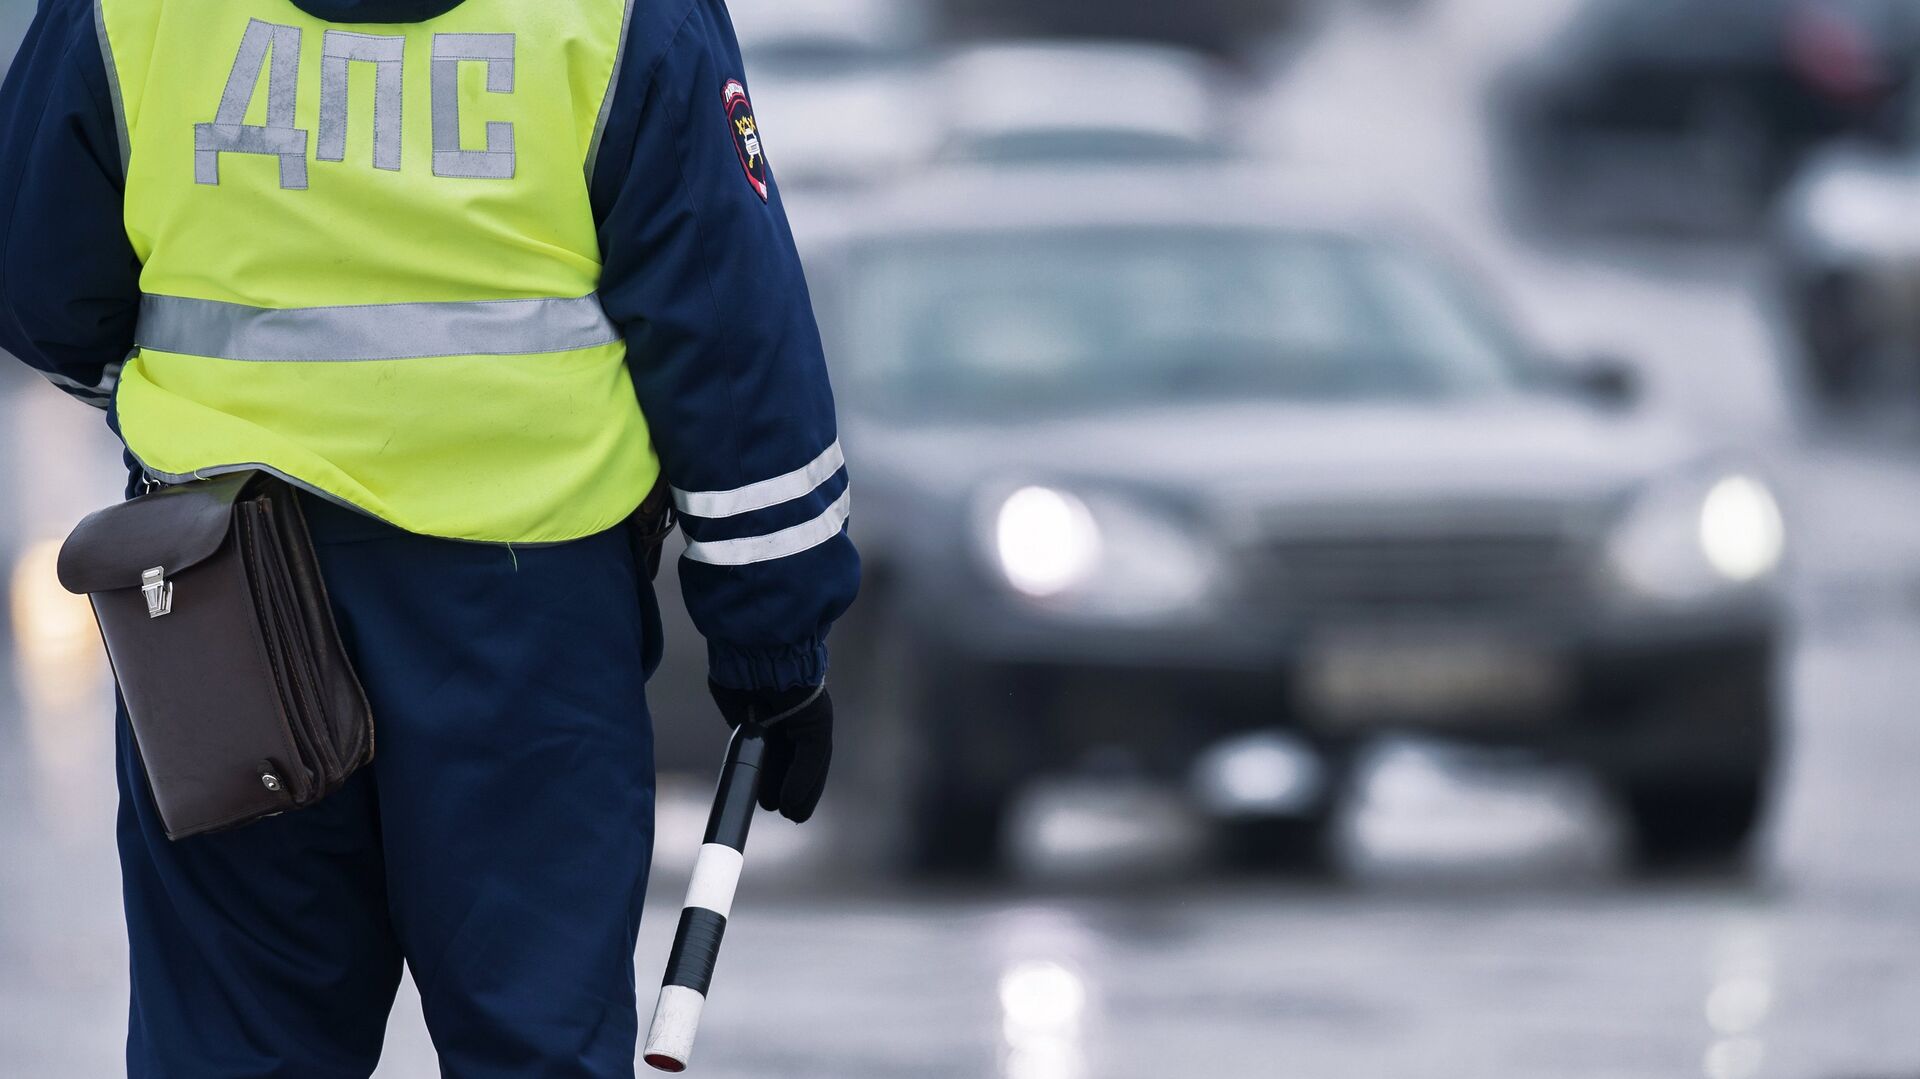 Накануне наряд ДПС Петровского округа задержал водителя в состоянии алкогольного опьянения.